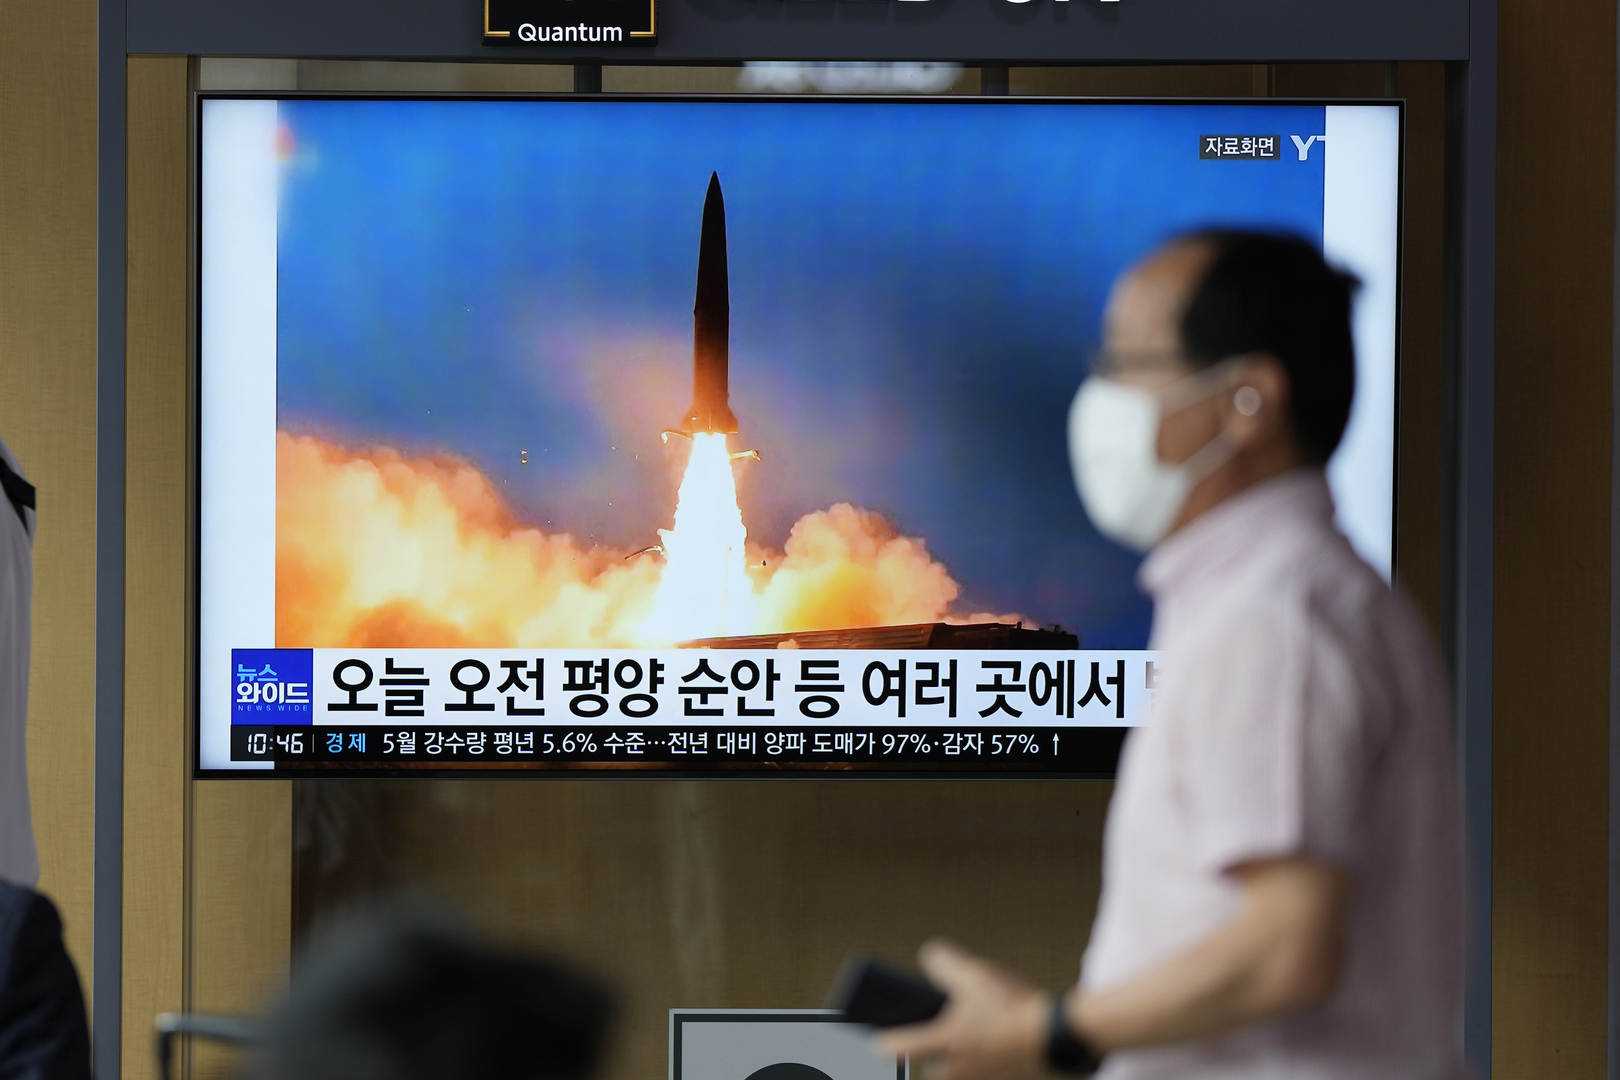 وزير الوحدة الكوري الجنوبي يتحدث عن توقيت إجراء كوريا الشمالية تجربتها النووية